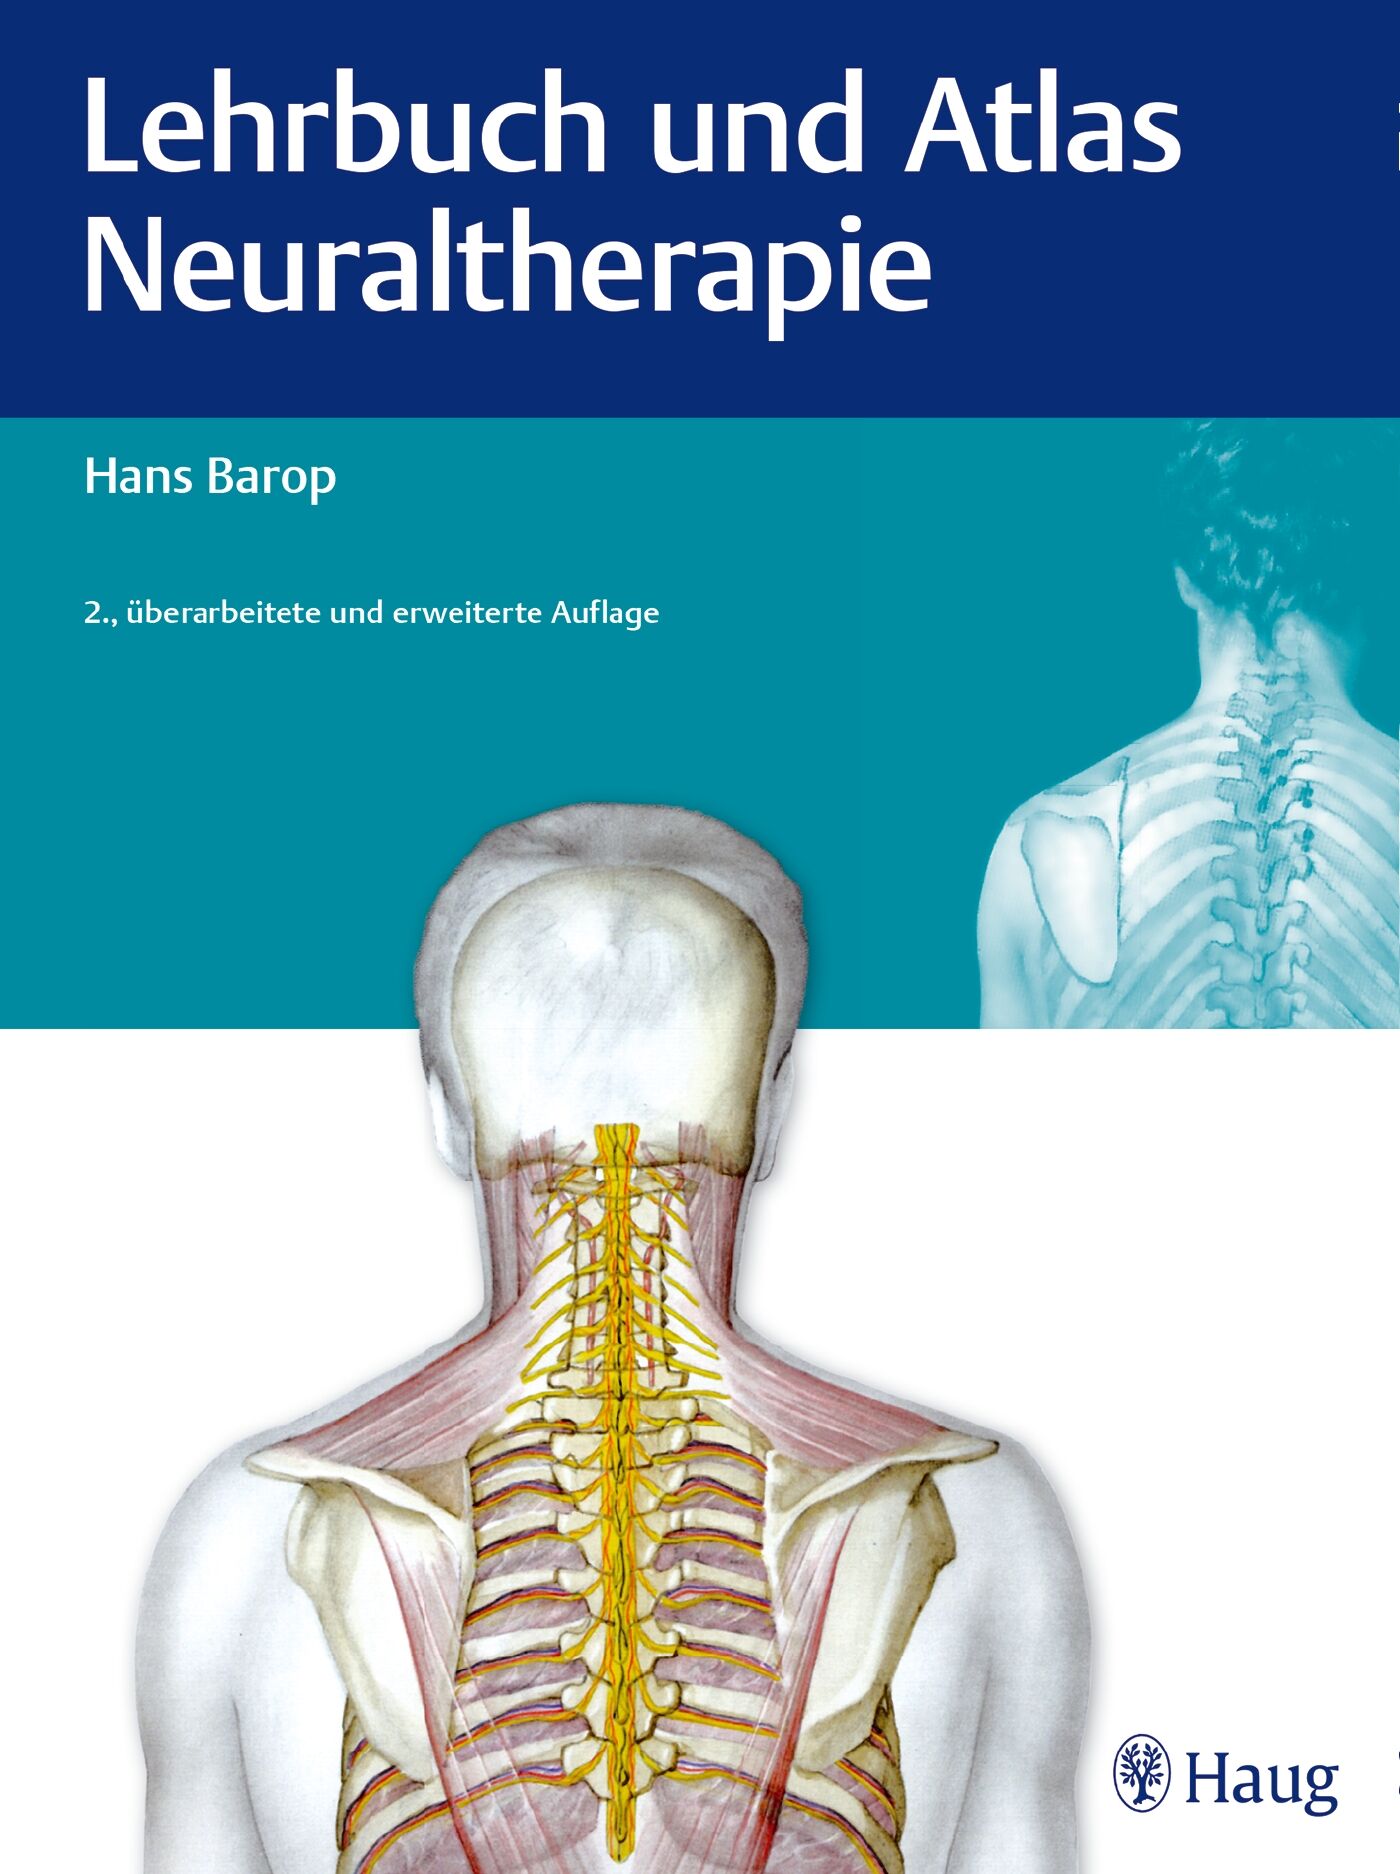 Lehrbuch und Atlas Neuraltherapie, 9783830477693